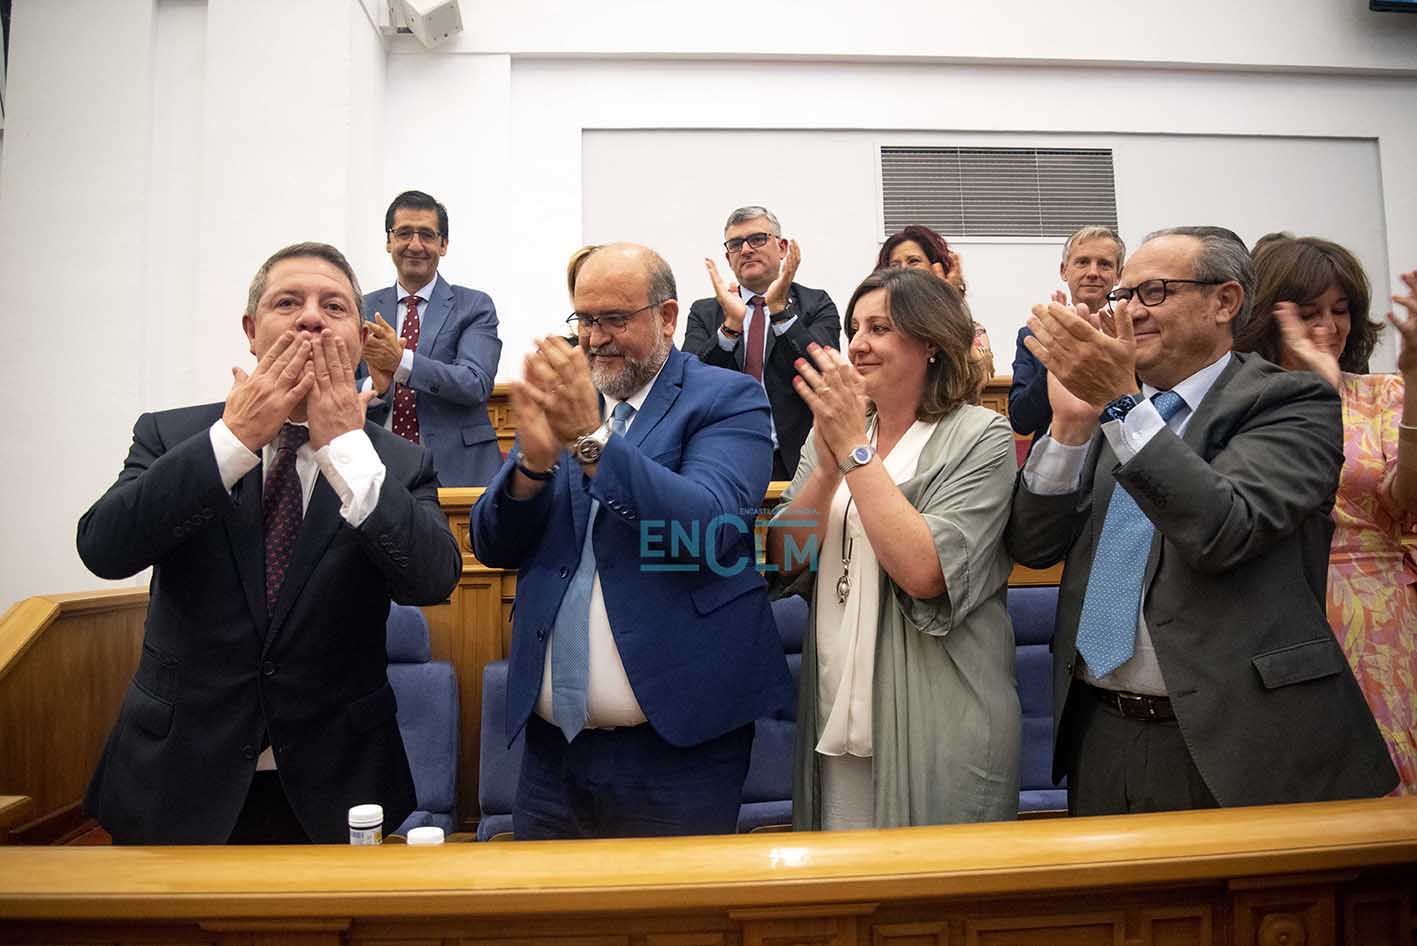 Page tras ser reelegido presidente de Castilla-La Mancha. Foto: Rebeca Arango.